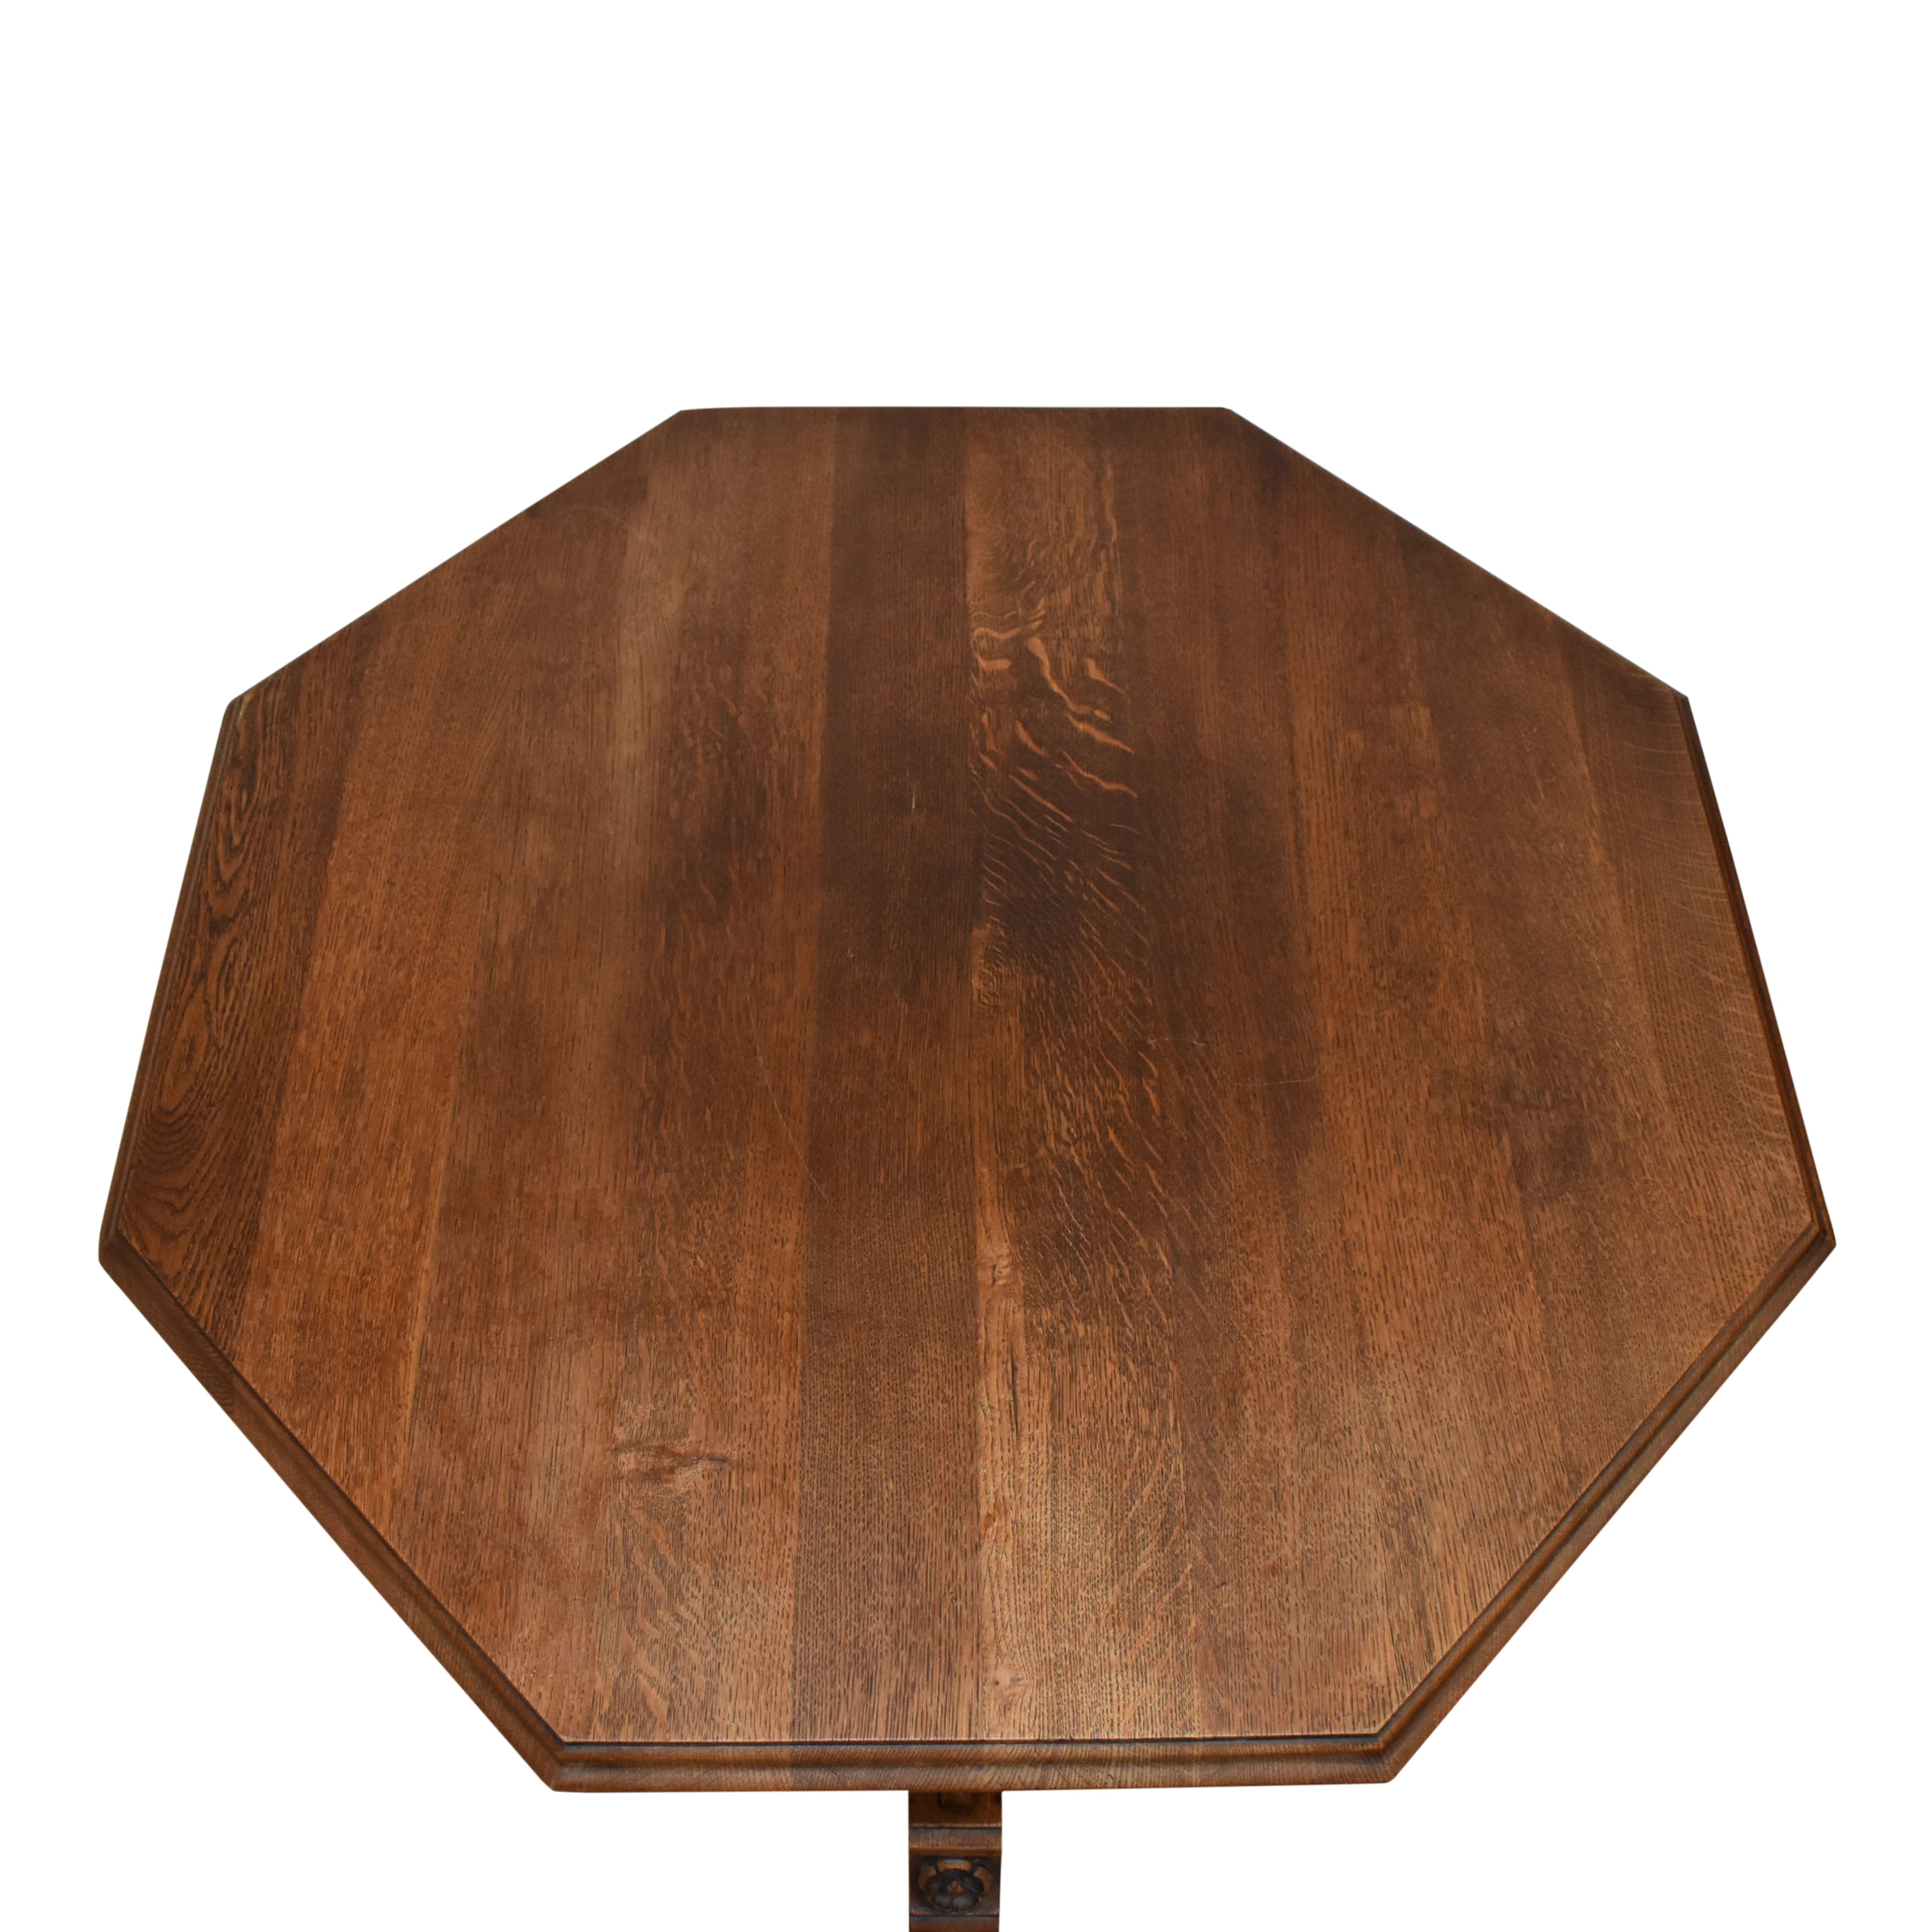 Gothic Oak Octagonal Table